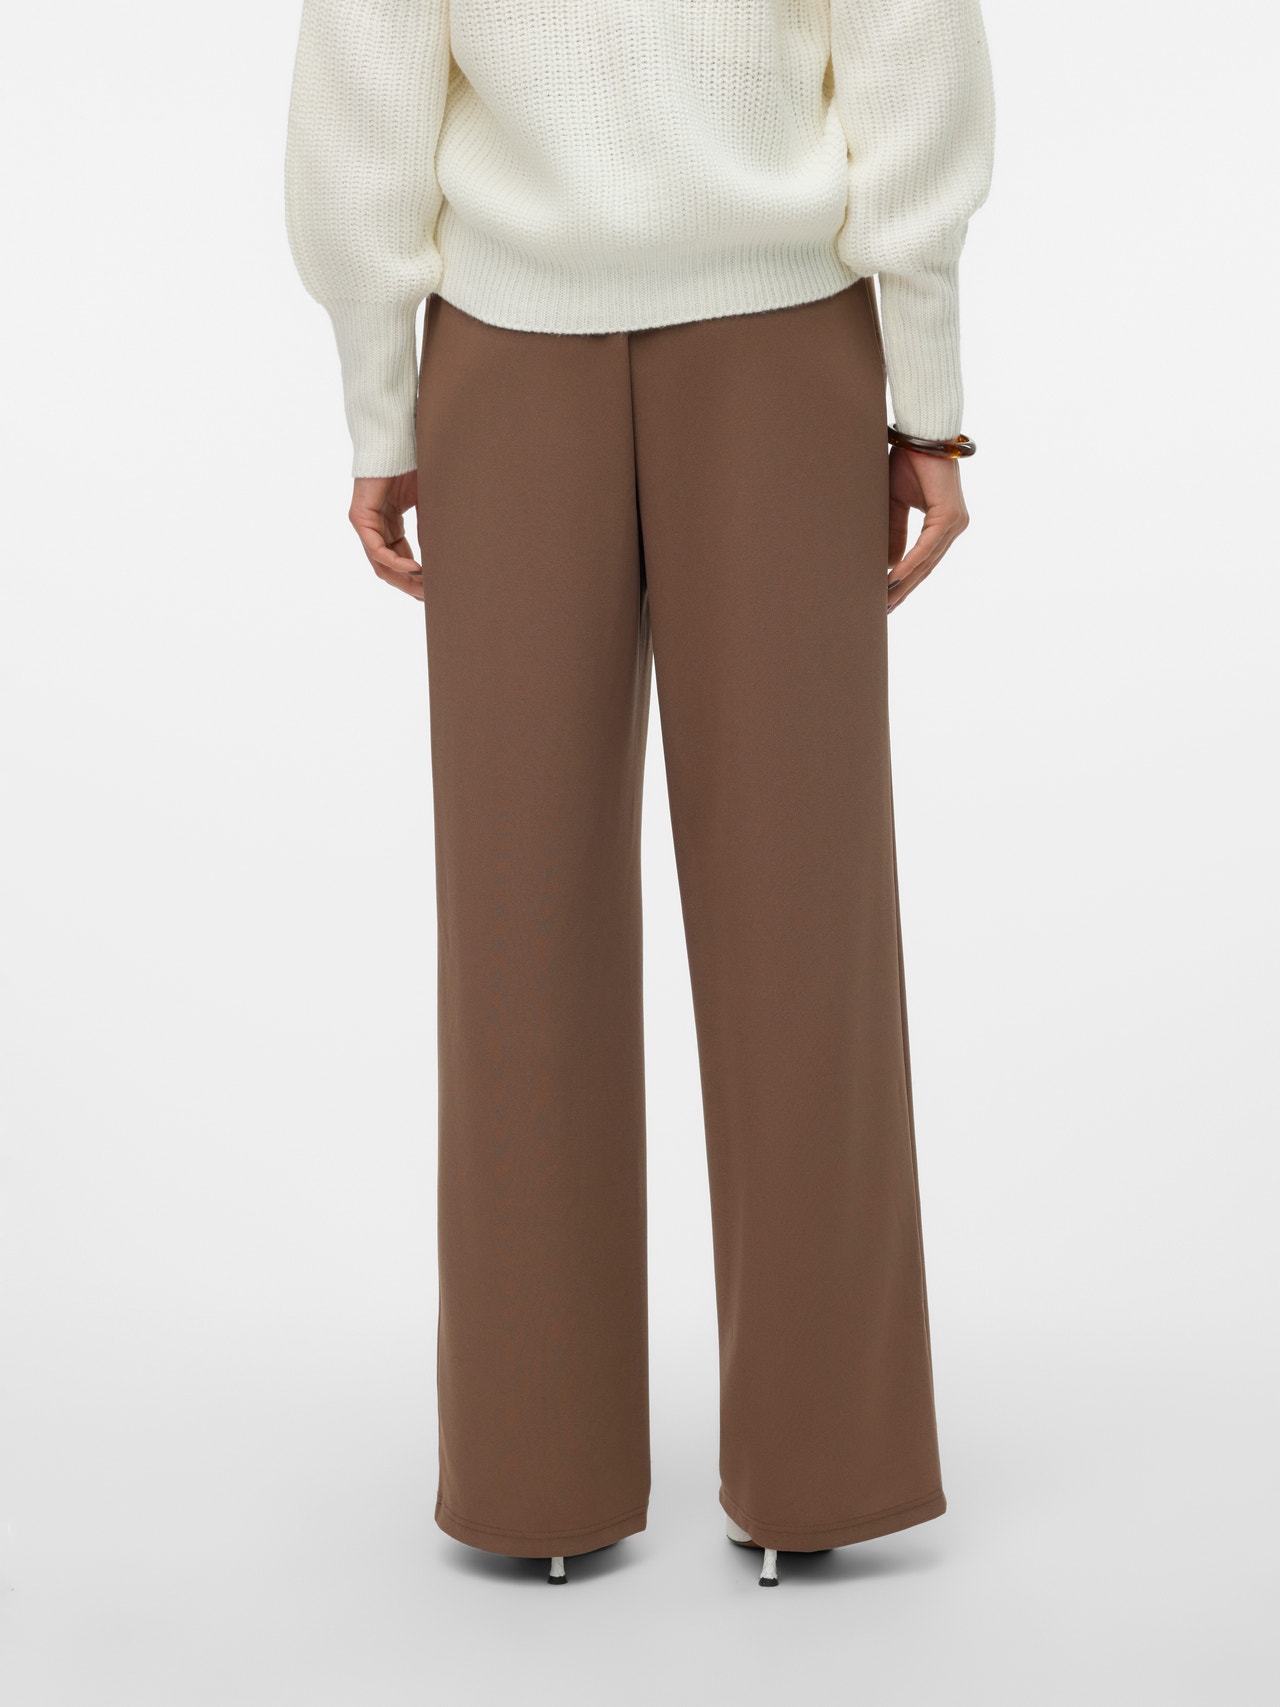 Vero Moda VMLIVA Trousers -Shitake - 10321279